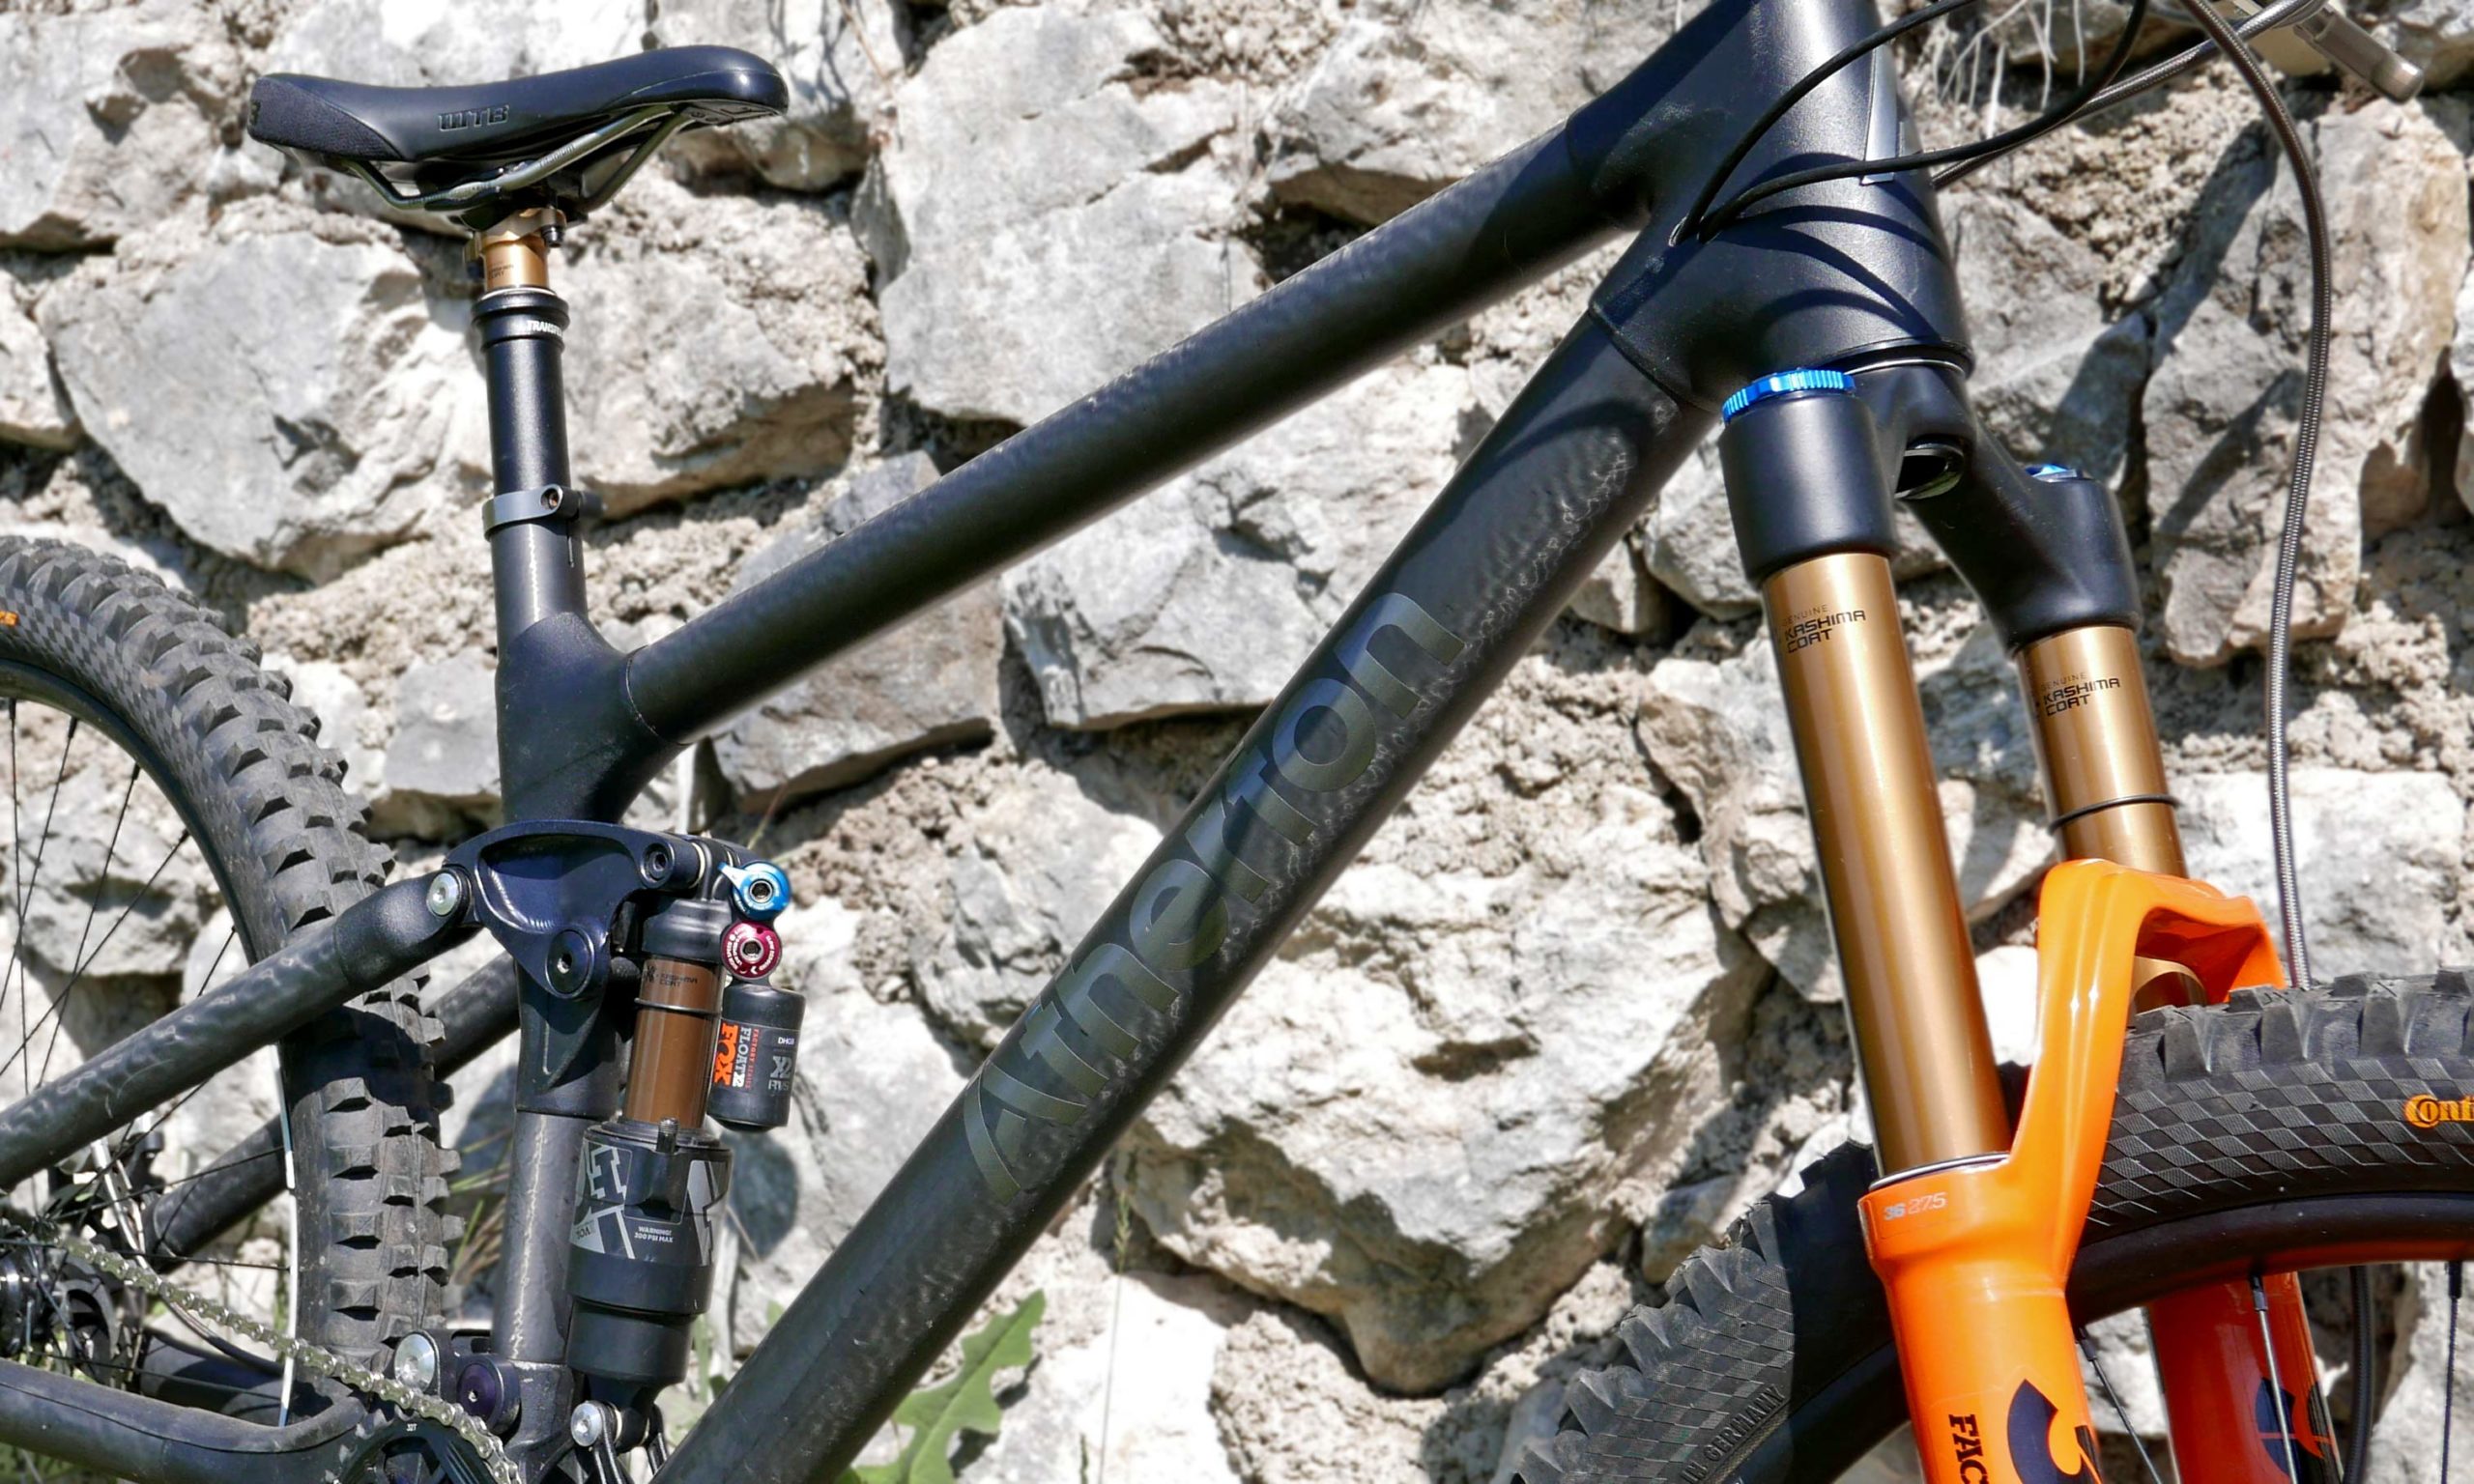 Atherton Bikes #FirstFifty custom carbon 29er Enduro DH DW6 mountain bikes